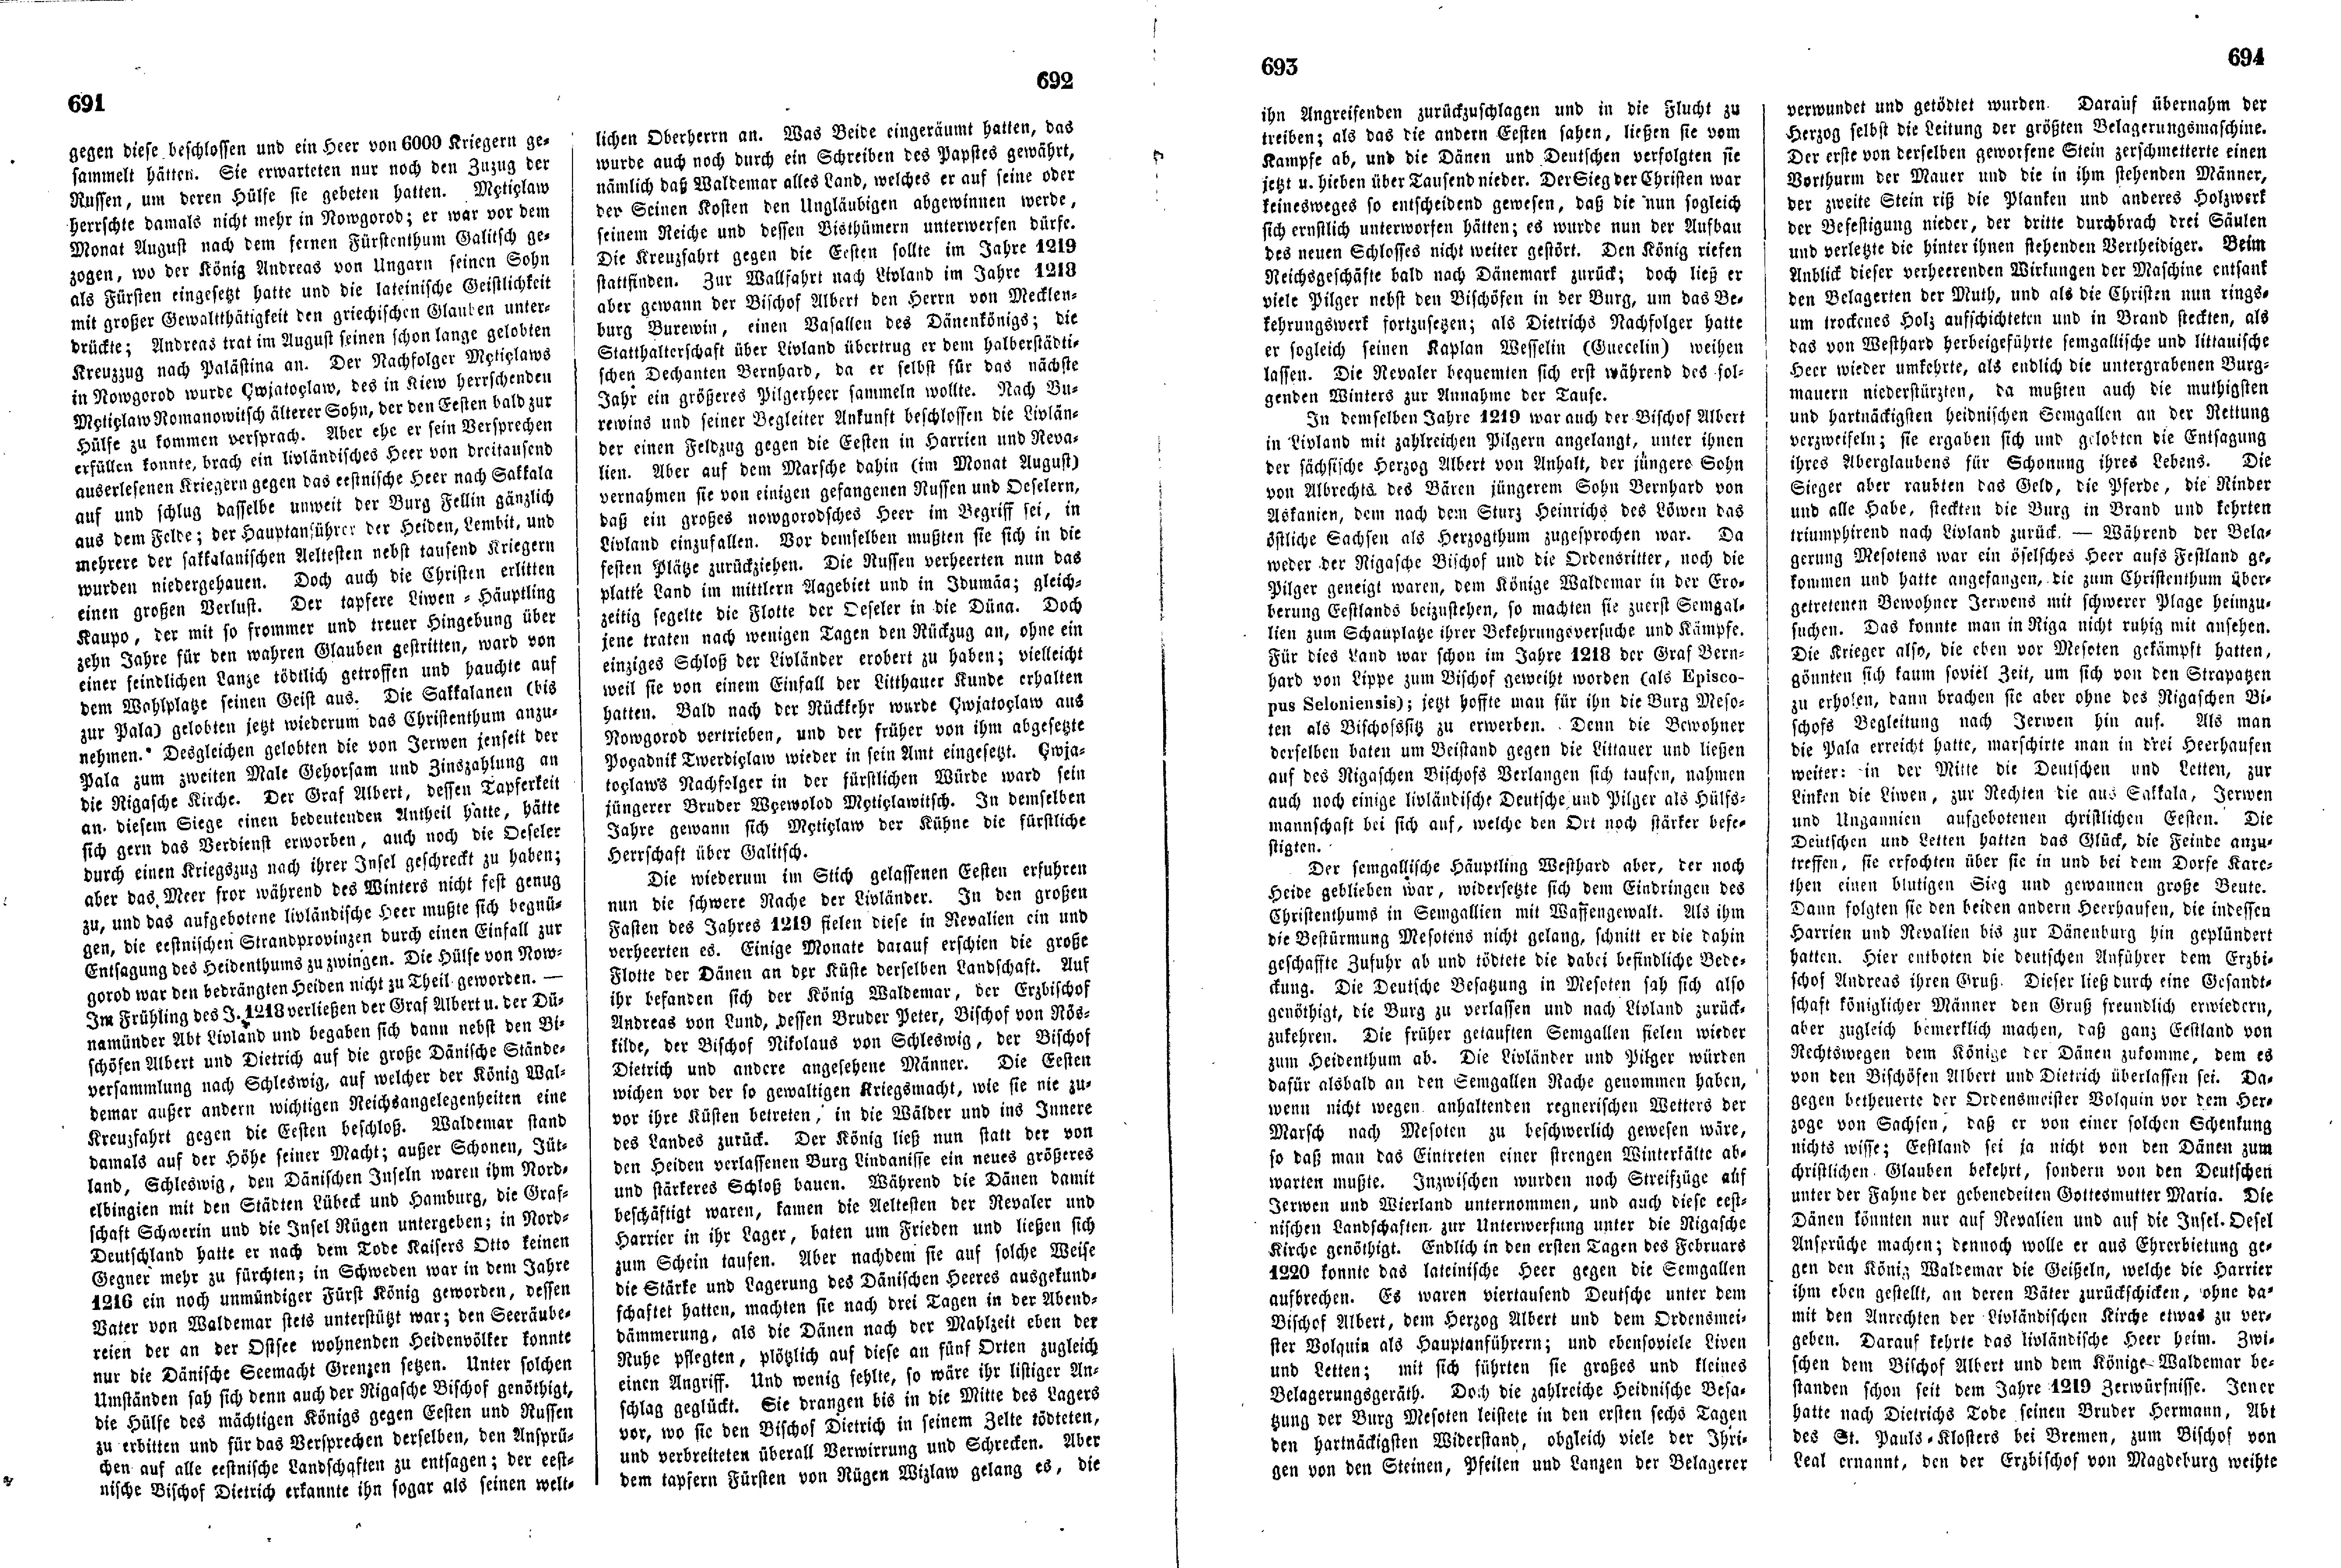 Das Inland [18] (1853) | 183. (691-694) Основной текст